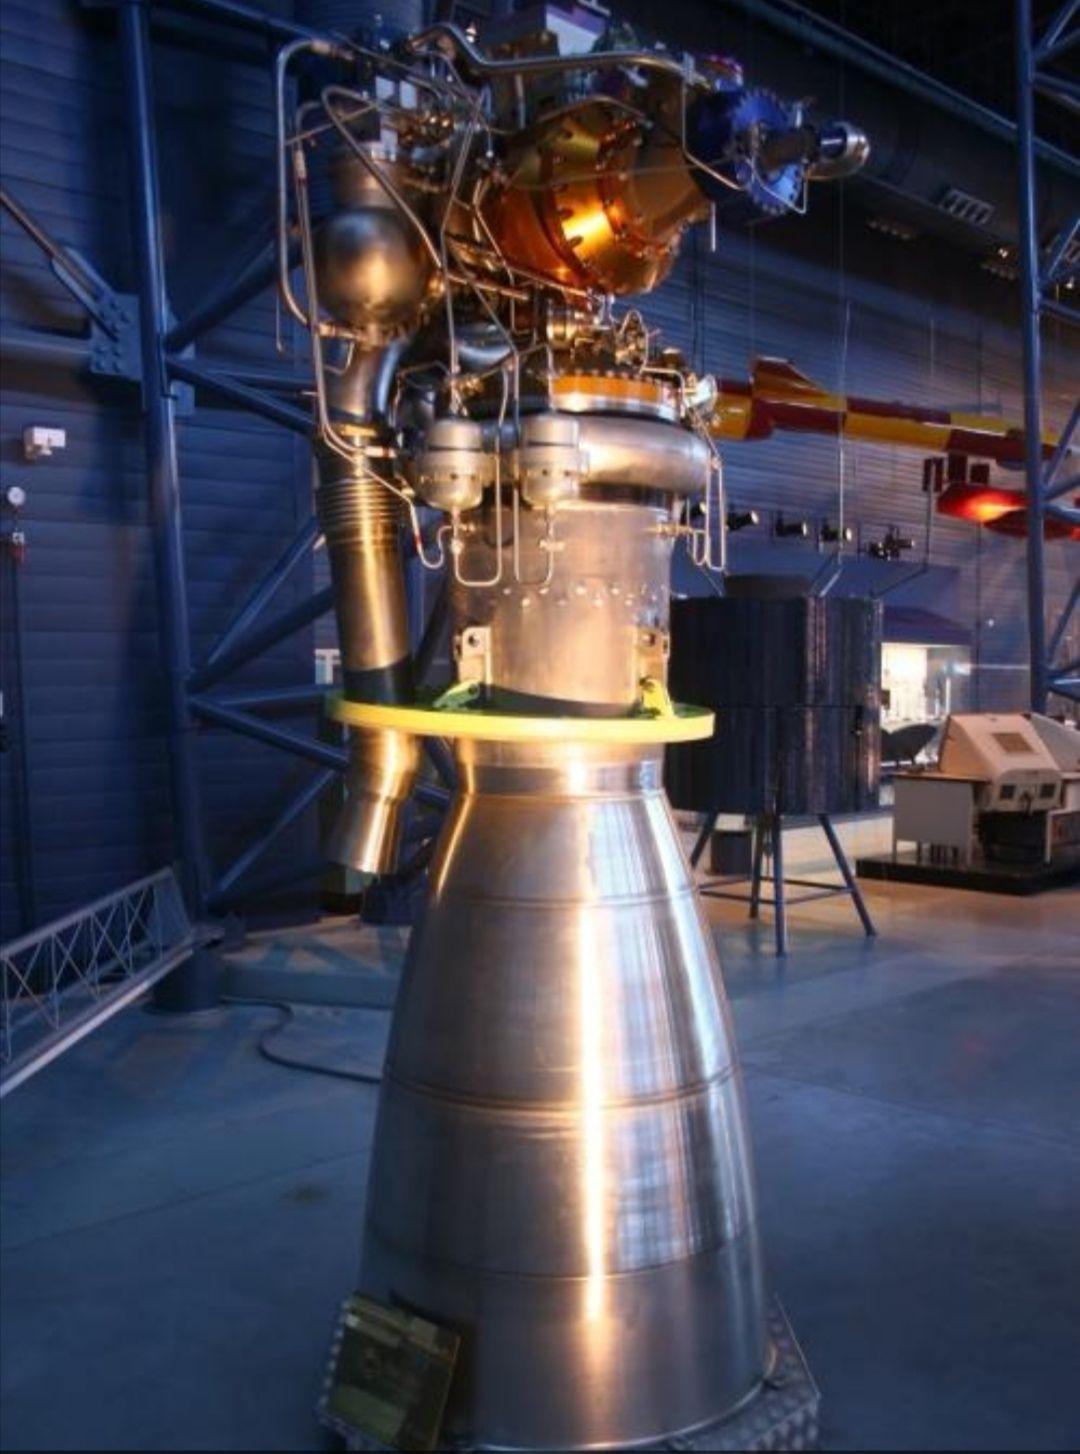 液氧甲烷火箭发动机图片